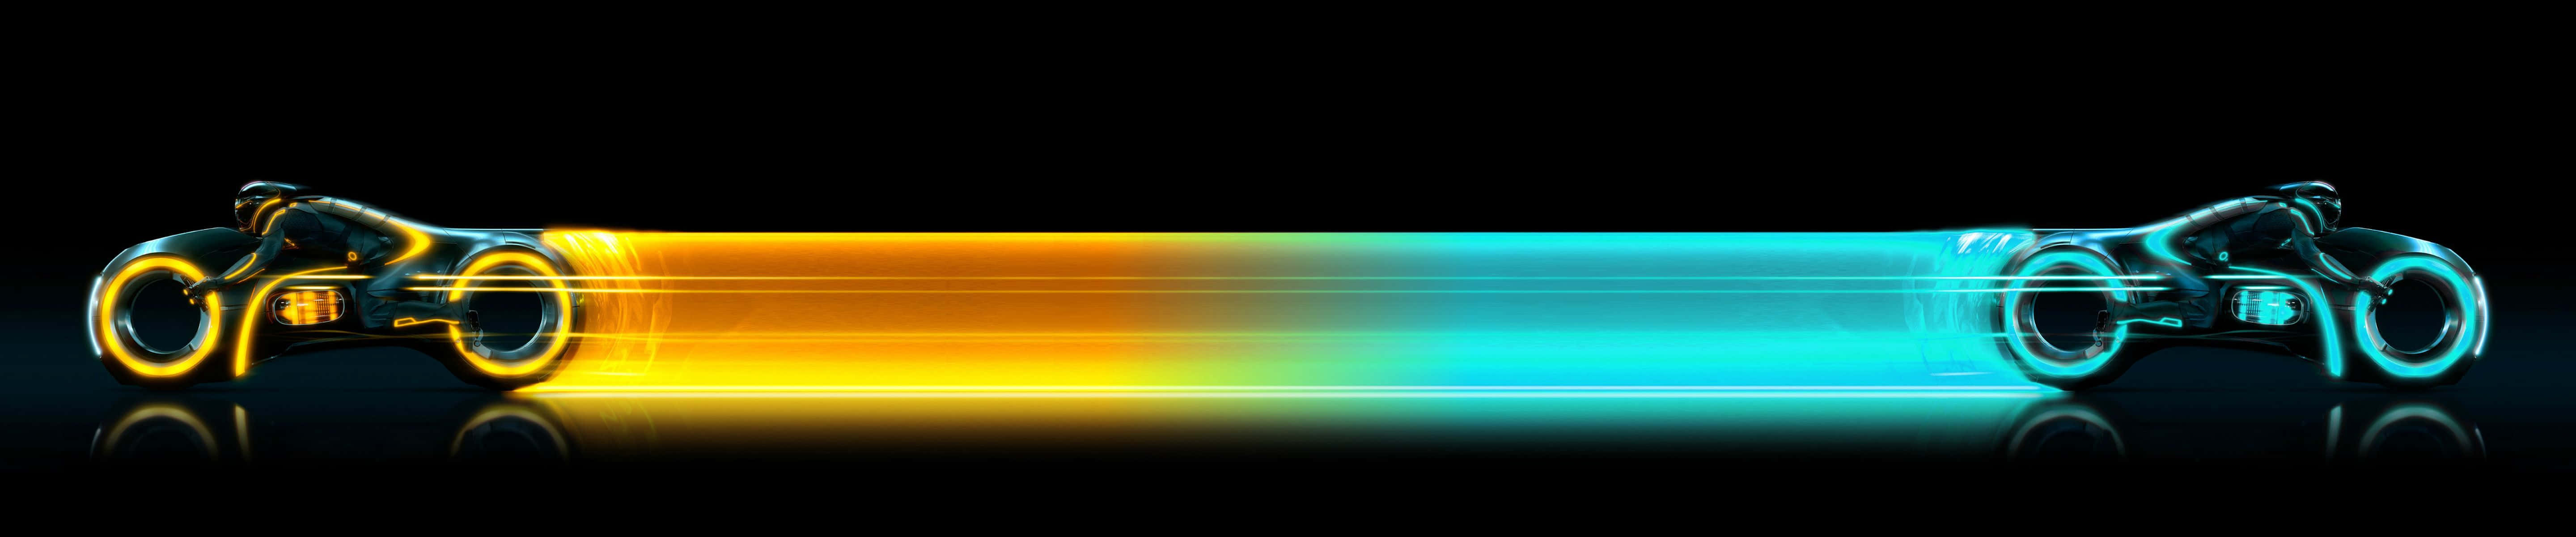 Tolletron Gelbe Und Blaue Bike Pixel 3 Monitor Hintergrund